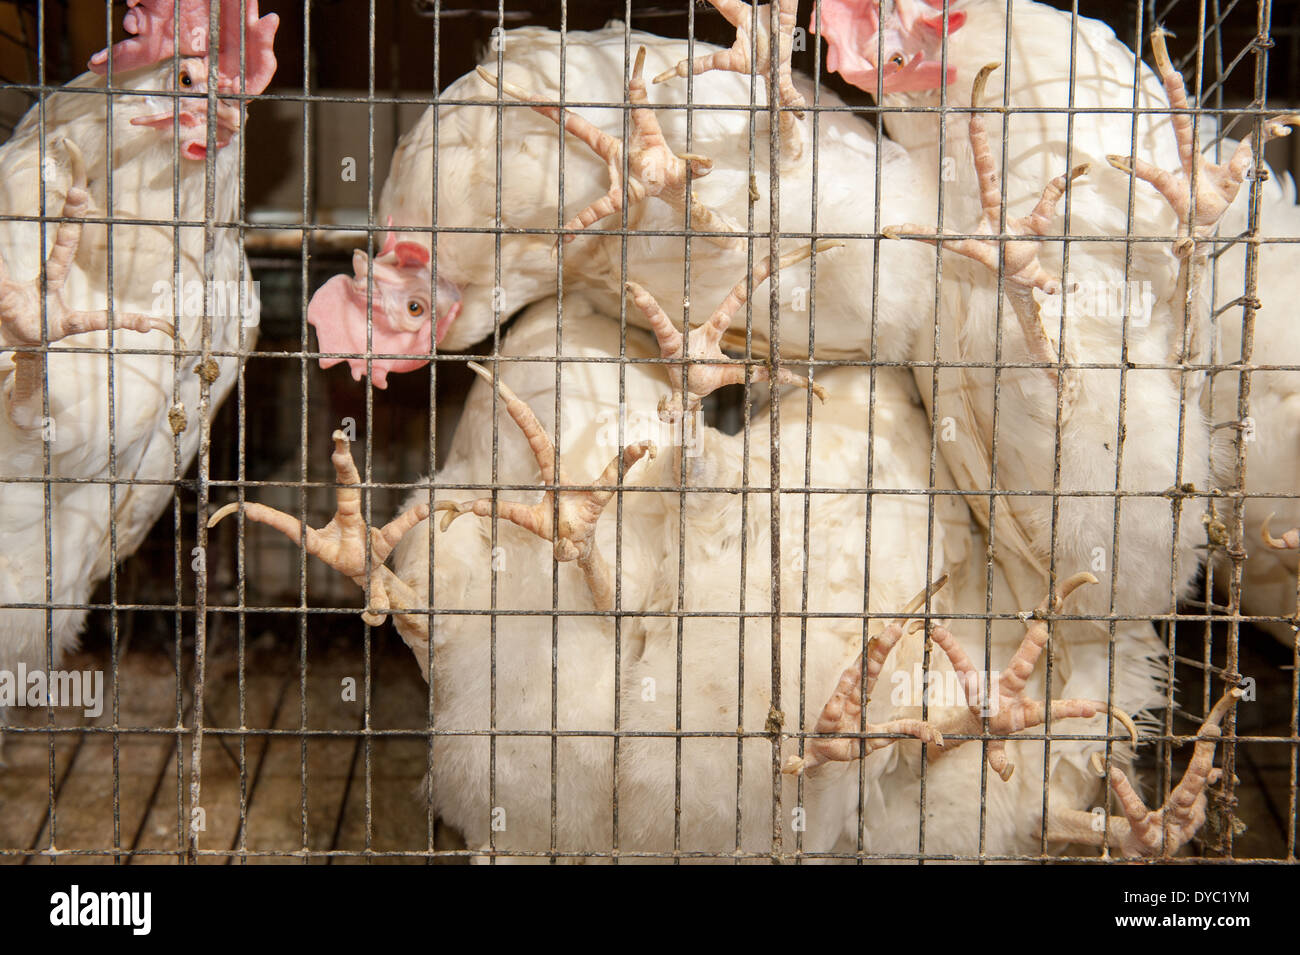 Polli in gabbia immagini e fotografie stock ad alta risoluzione - Alamy